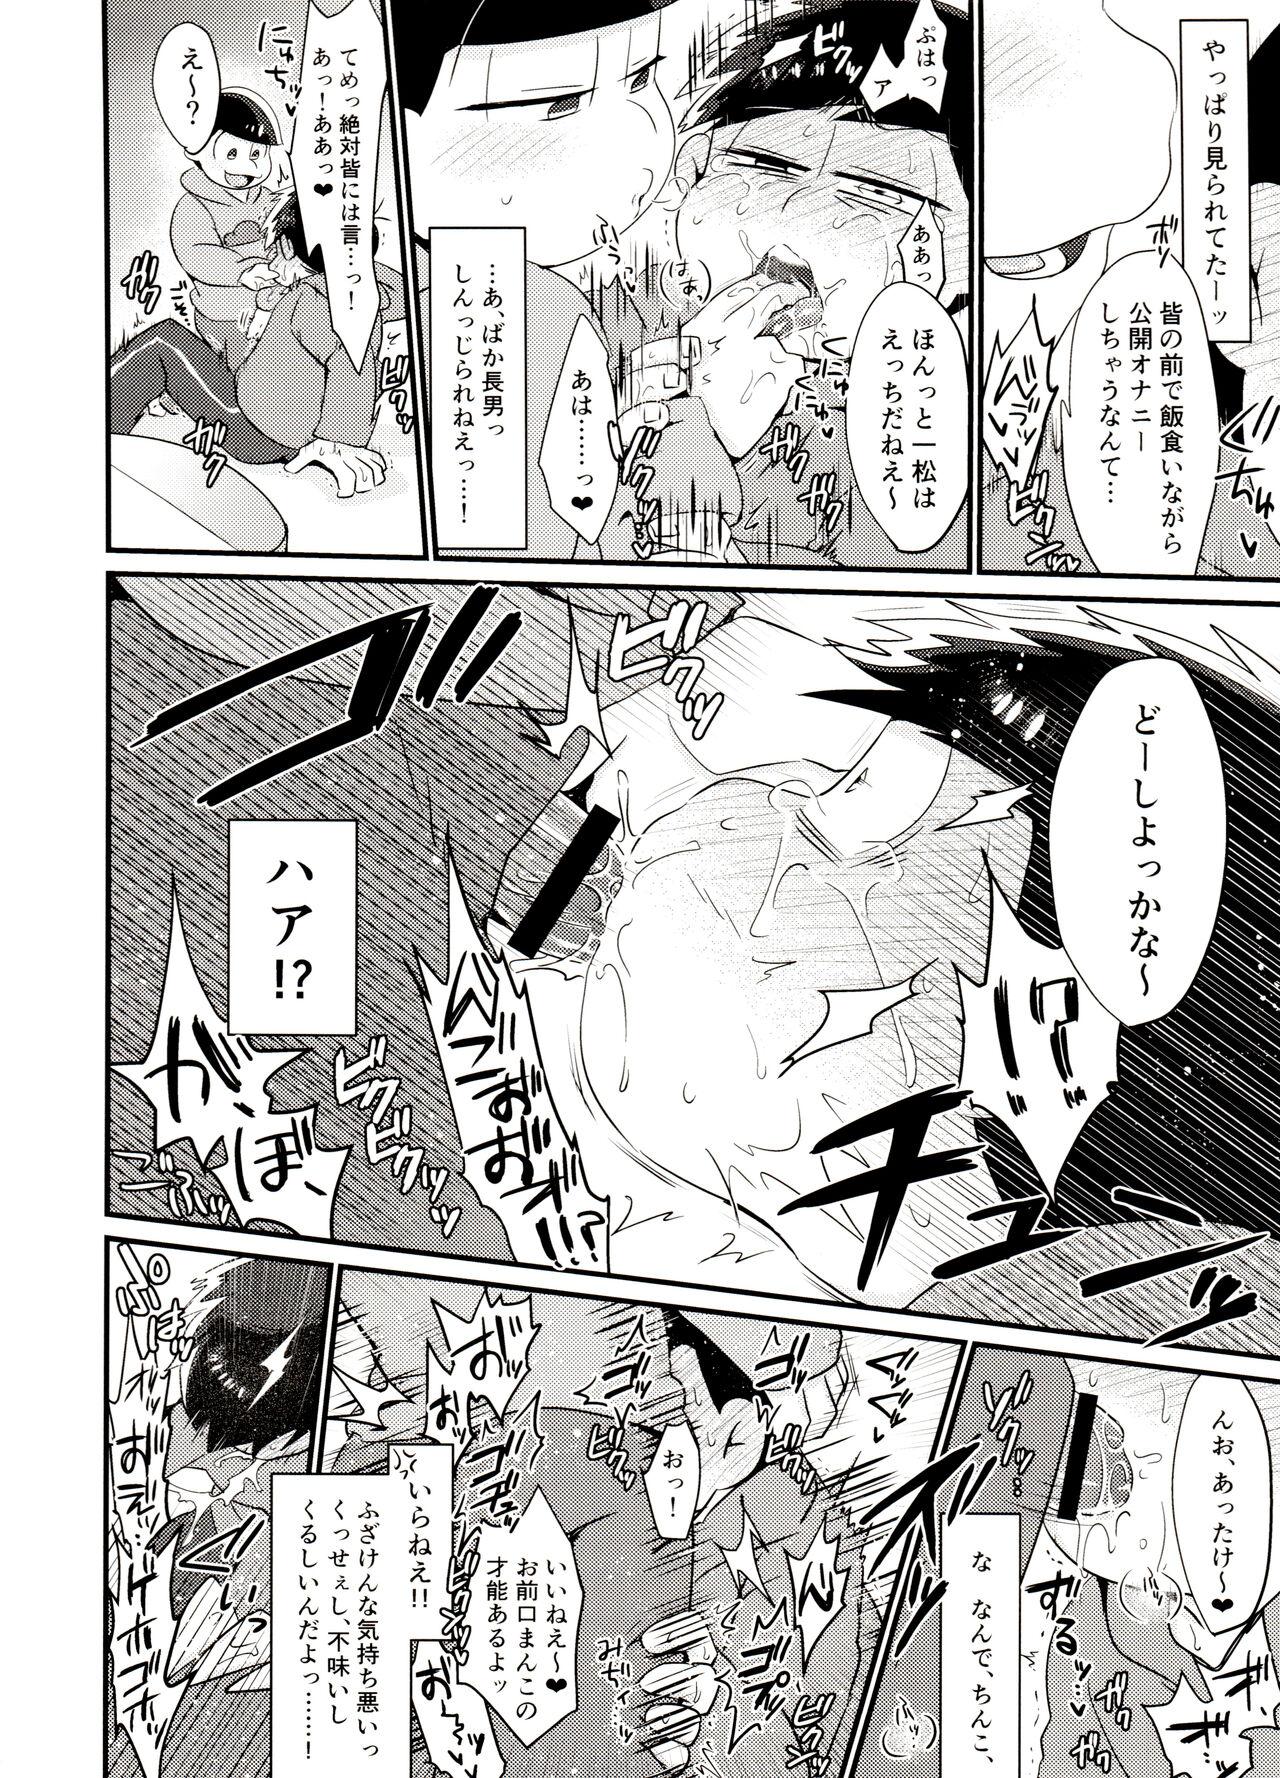 Kissing Ore no shita ga saikin okashī!! - Osomatsu san 1080p - Page 9